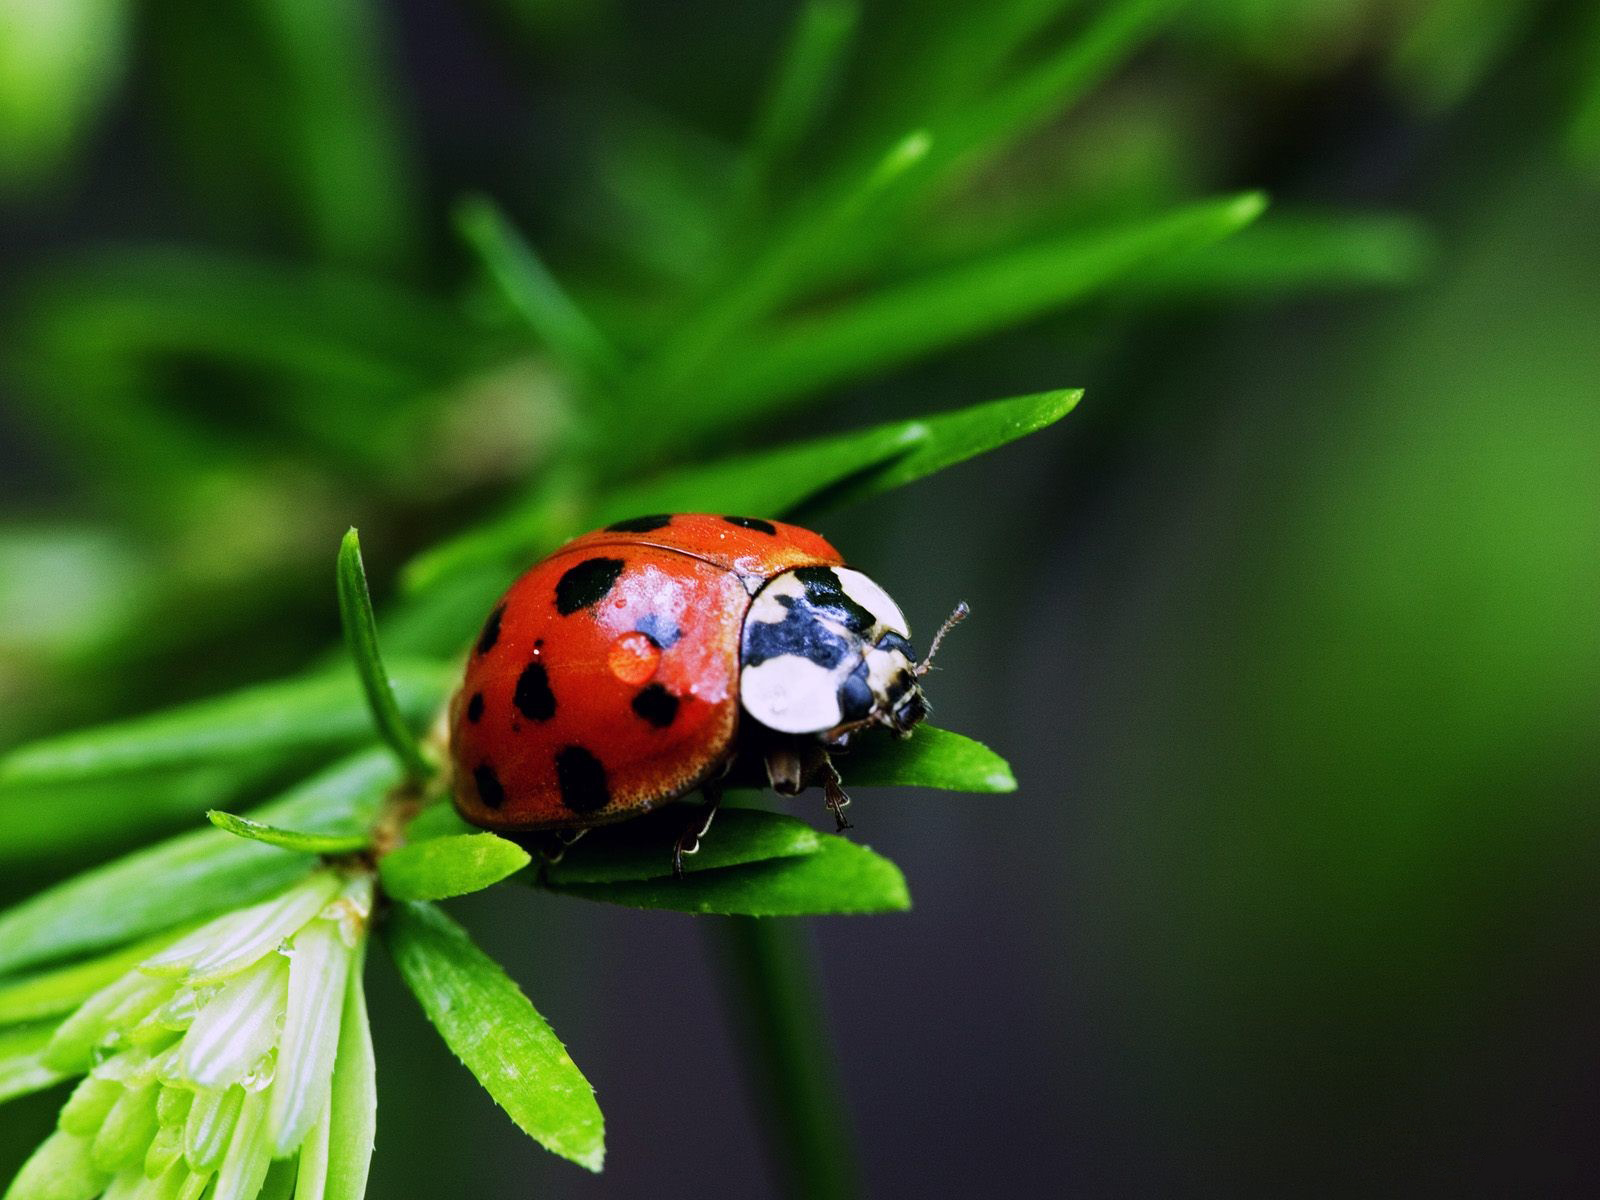 wallpaper bugs,ladybug,insect,macro photography,nature,beetle